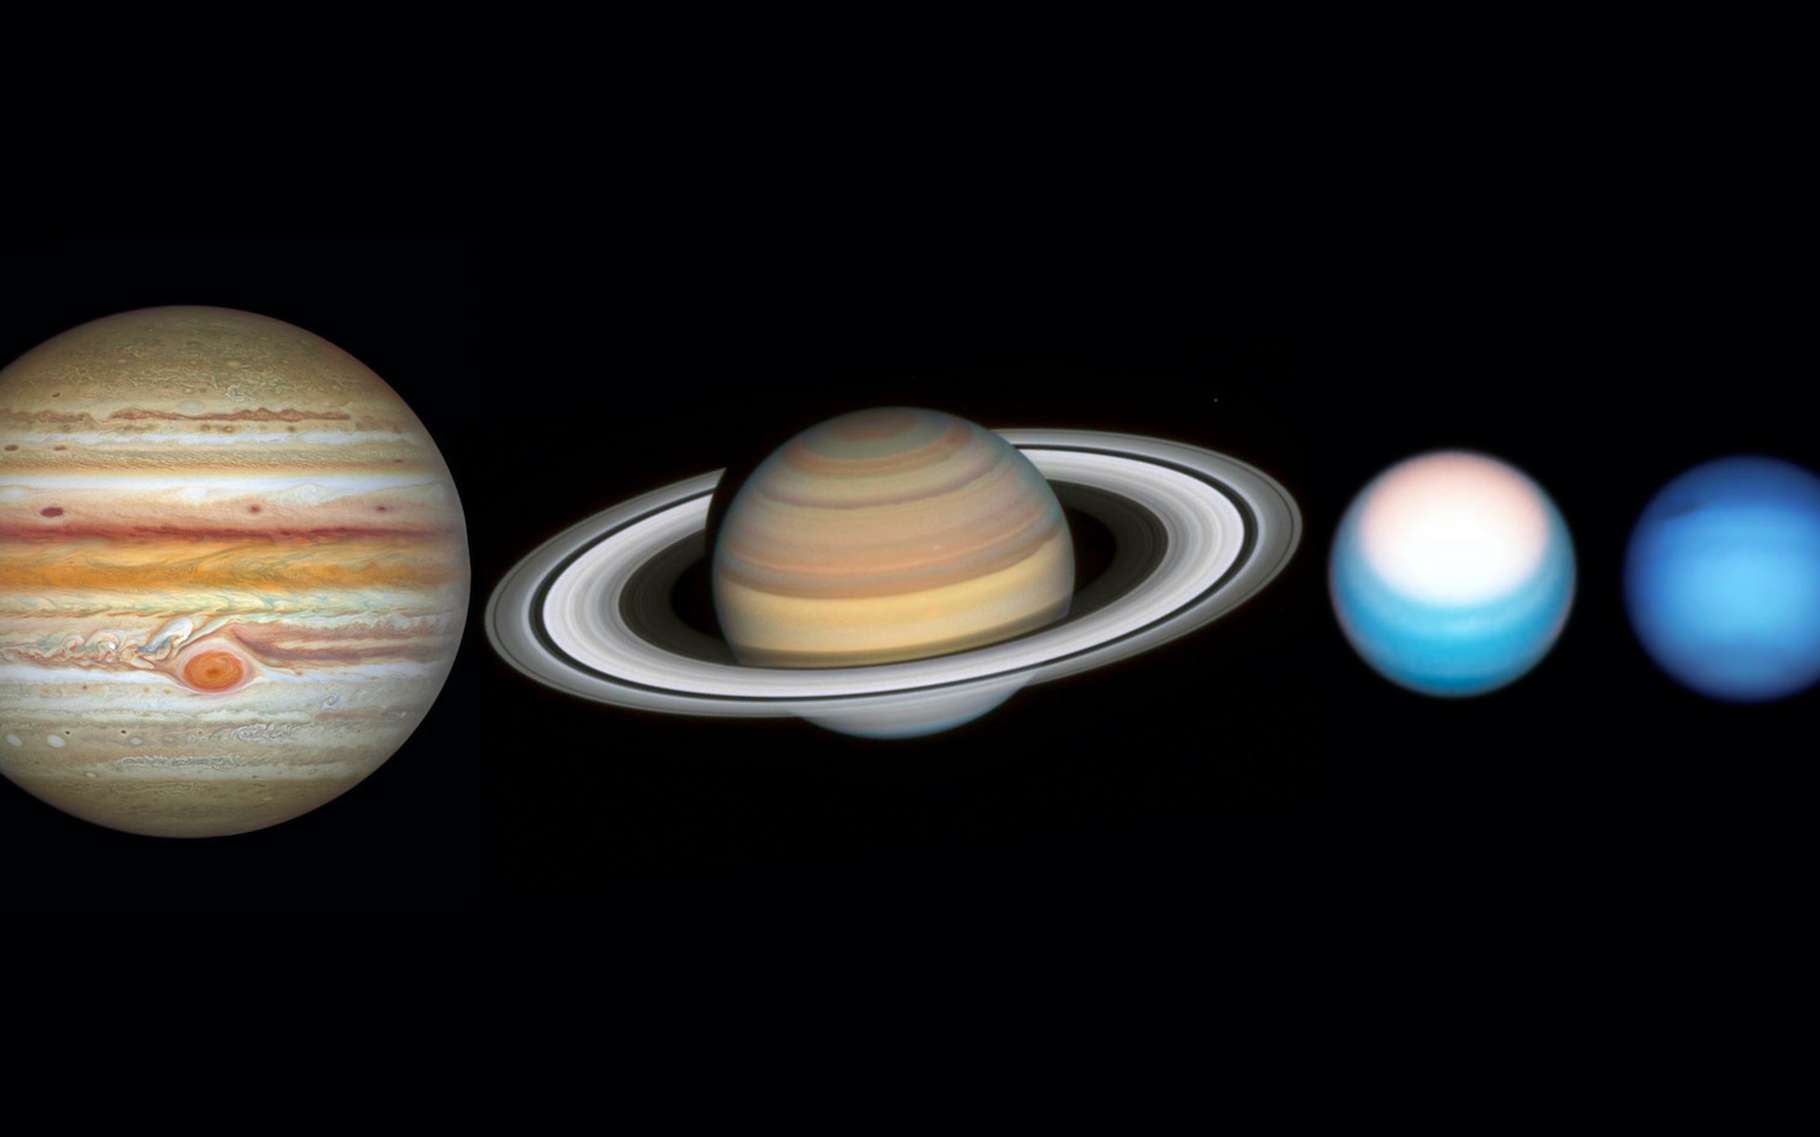 Jupiter, Saturne, Uranus et Neptune dans l'oeil du télescope spatial Hubble